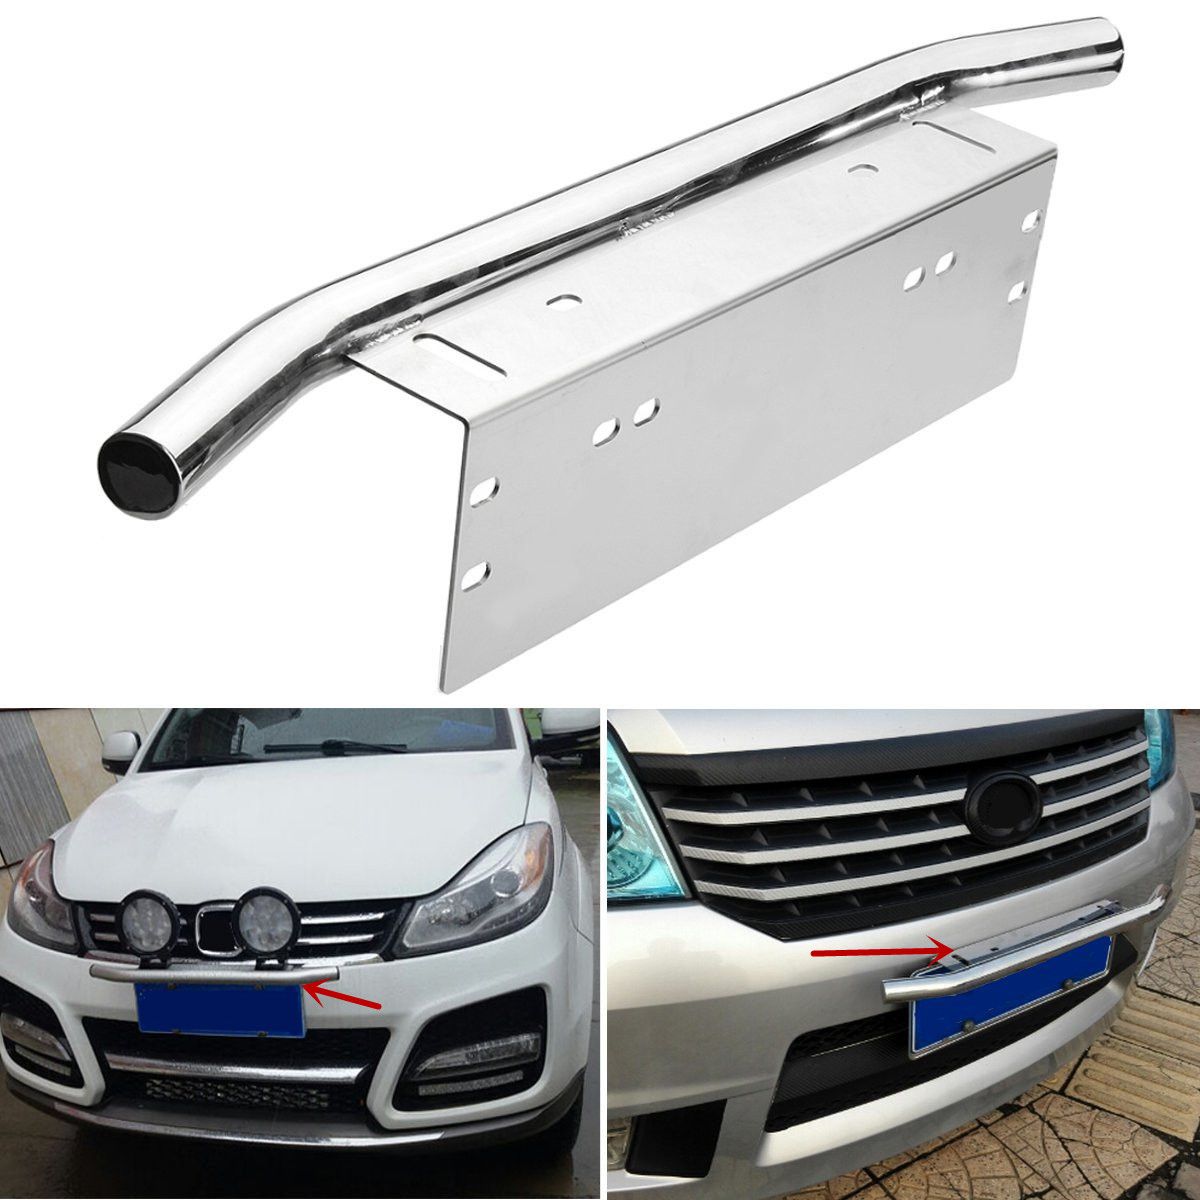 Universal-Car-Stainless-Steel-Light-Mounting-Bracket-License-Plate-Frame-Bull-Bar-Holder-Silver-1682737